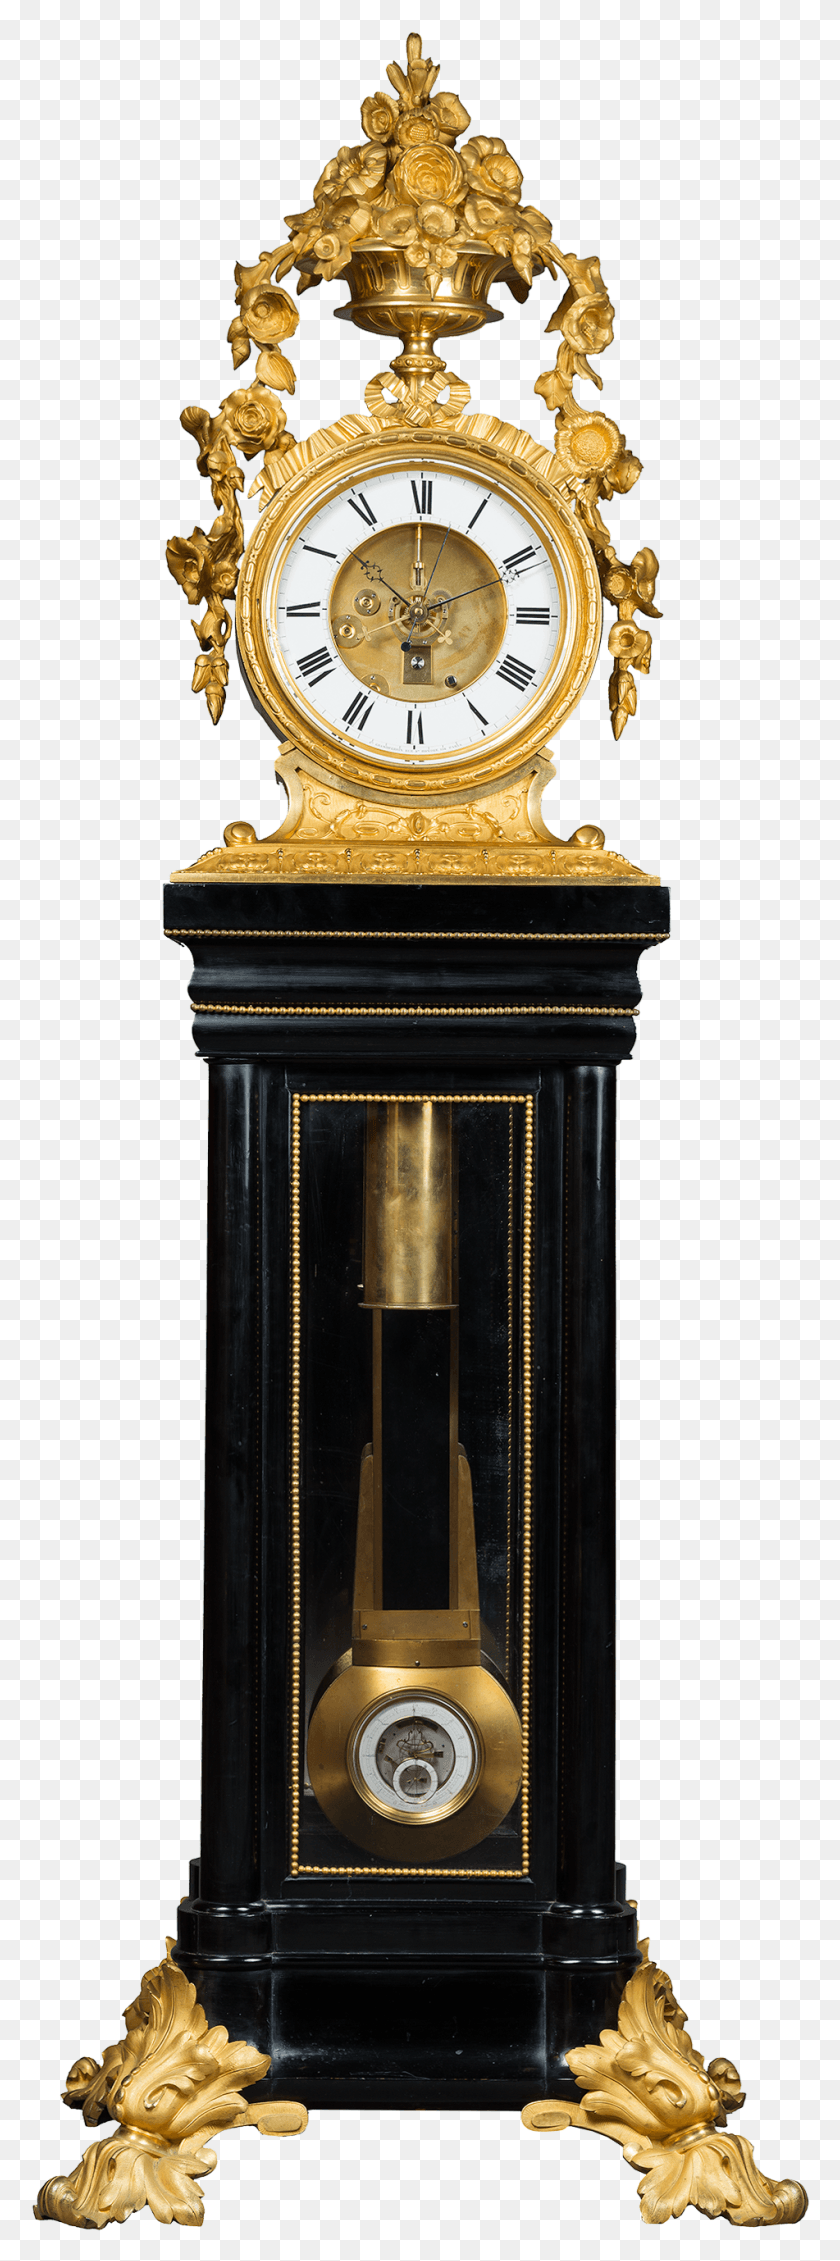 951x2684 Descargar Png Regulador Excepcional Y Único Con Reloj De Cuarzo De Péndulo De Placa De Mica, Reloj Analógico, Bronce Hd Png